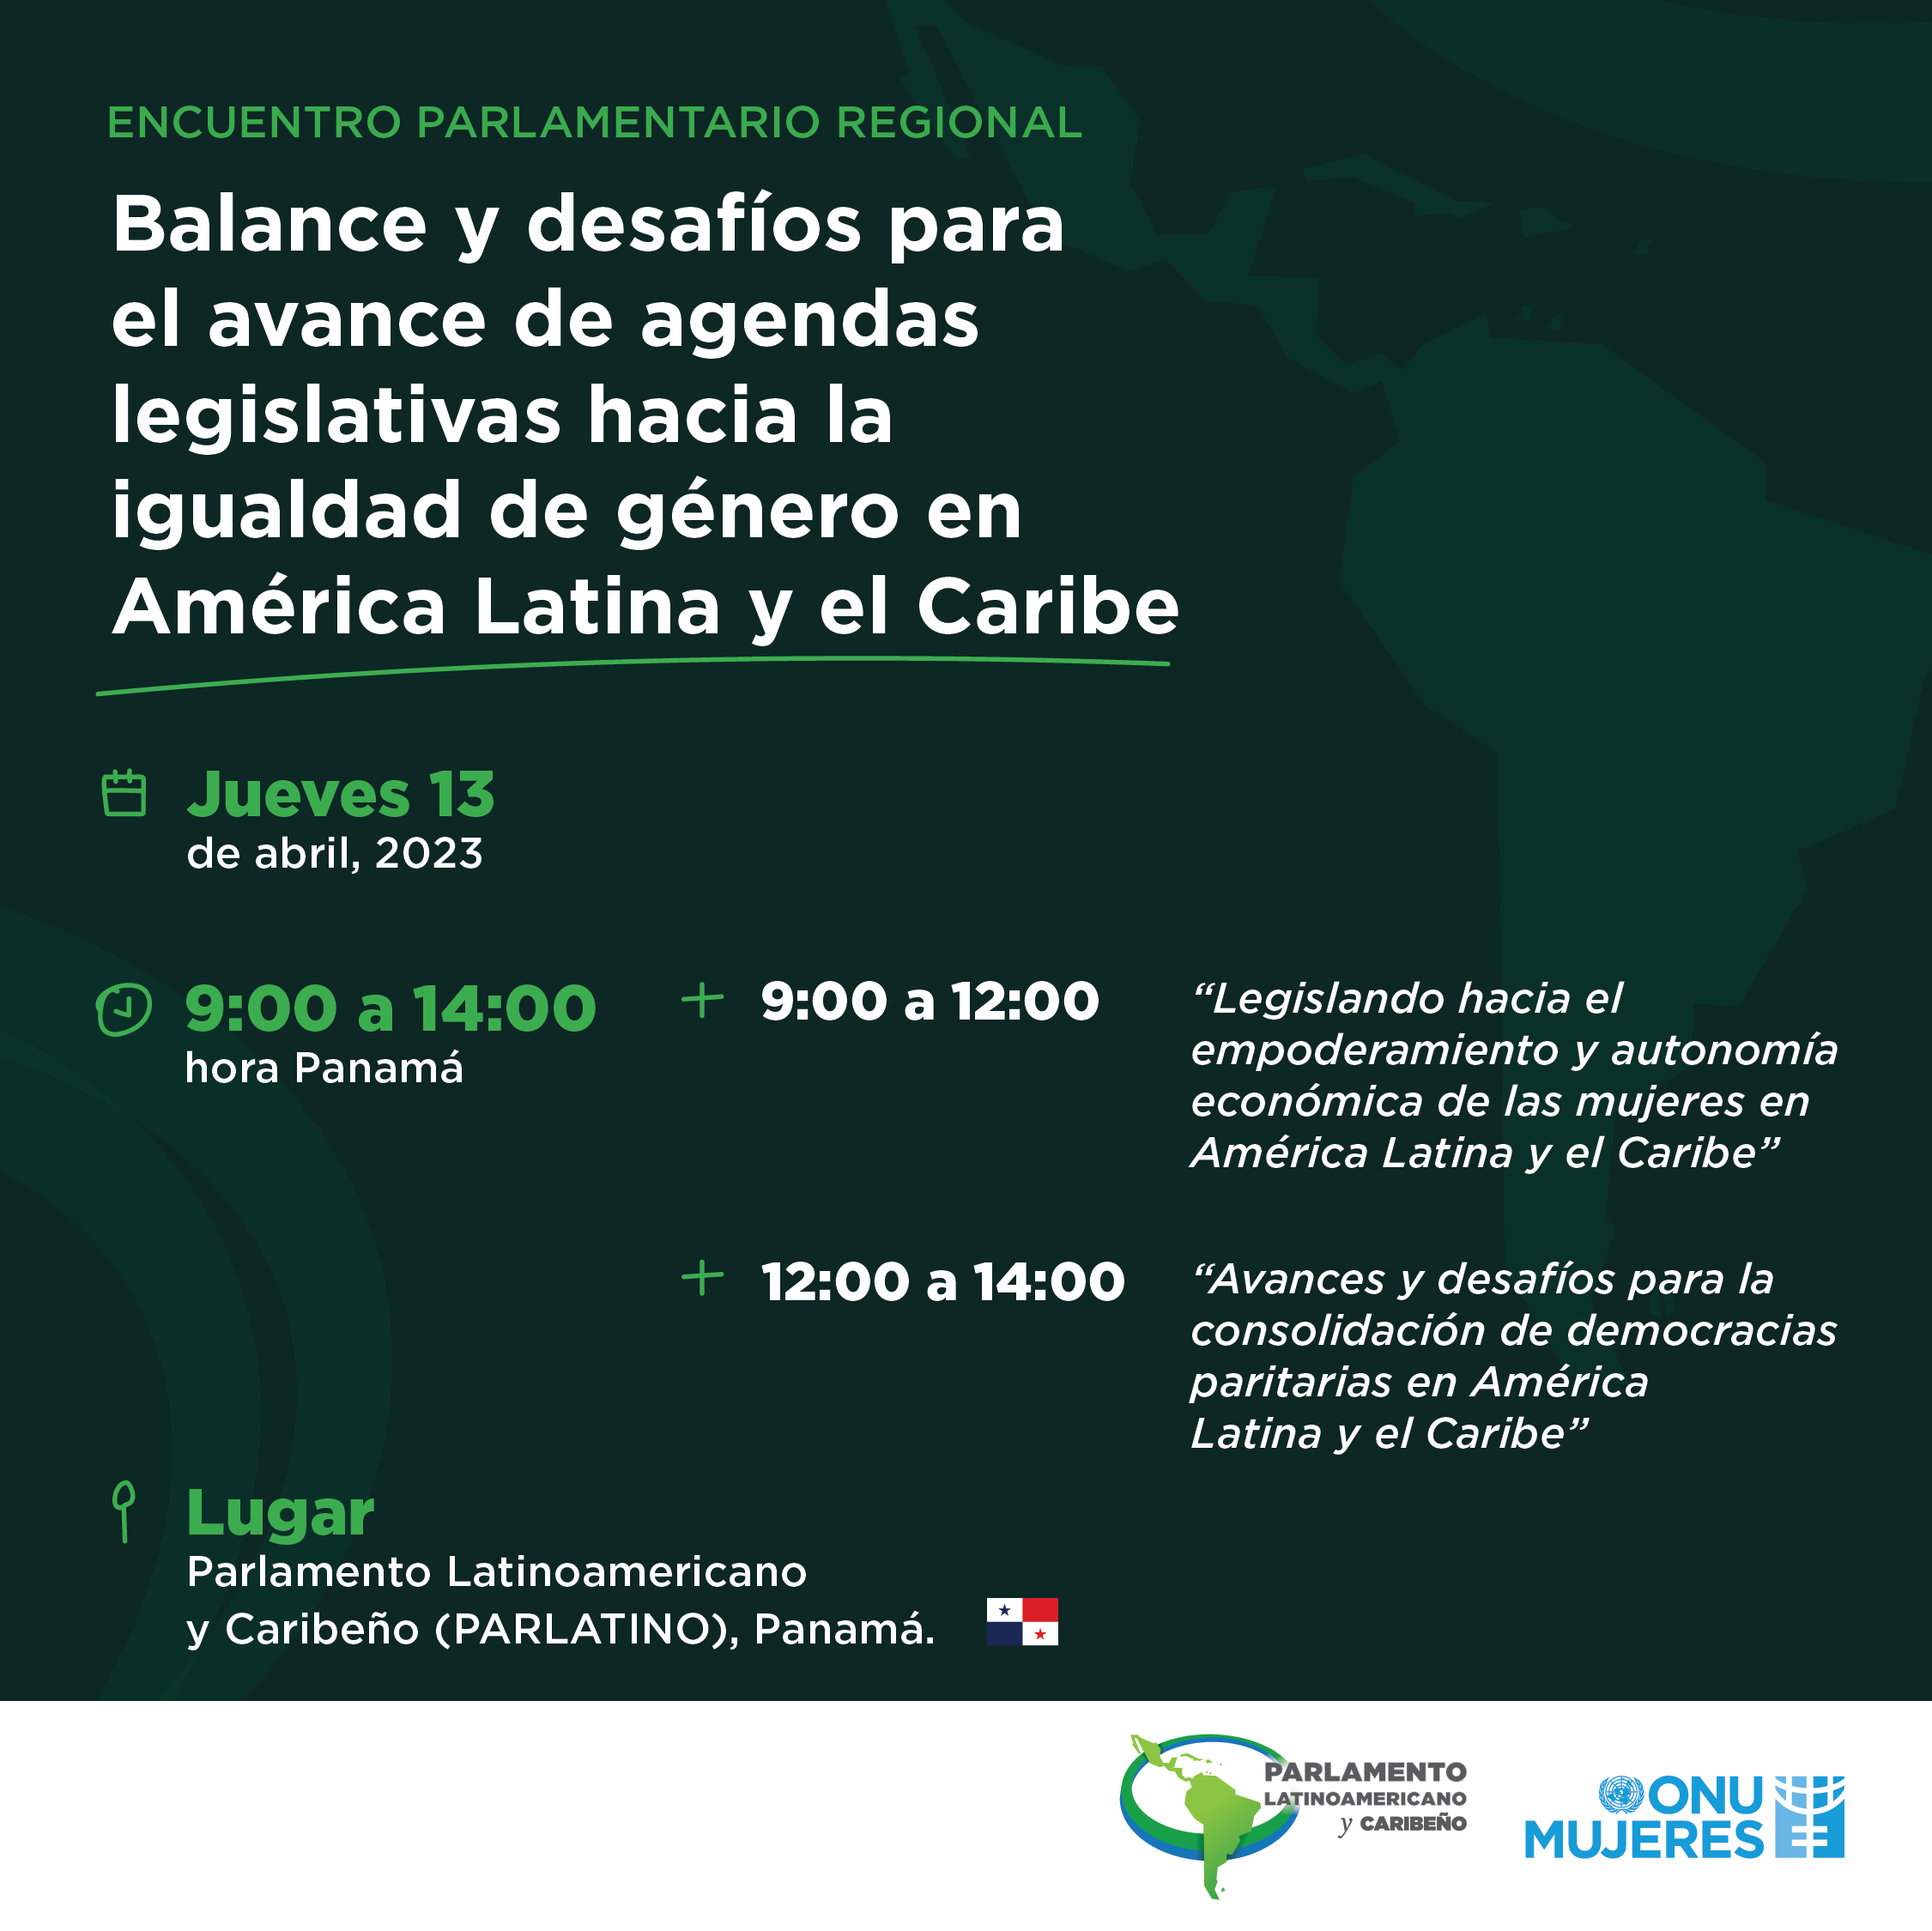 Encuentro parlamentario regional “Balance y desafíos para el avance de agendas legislativas hacia la igualdad de género en América Latina y el Caribe”